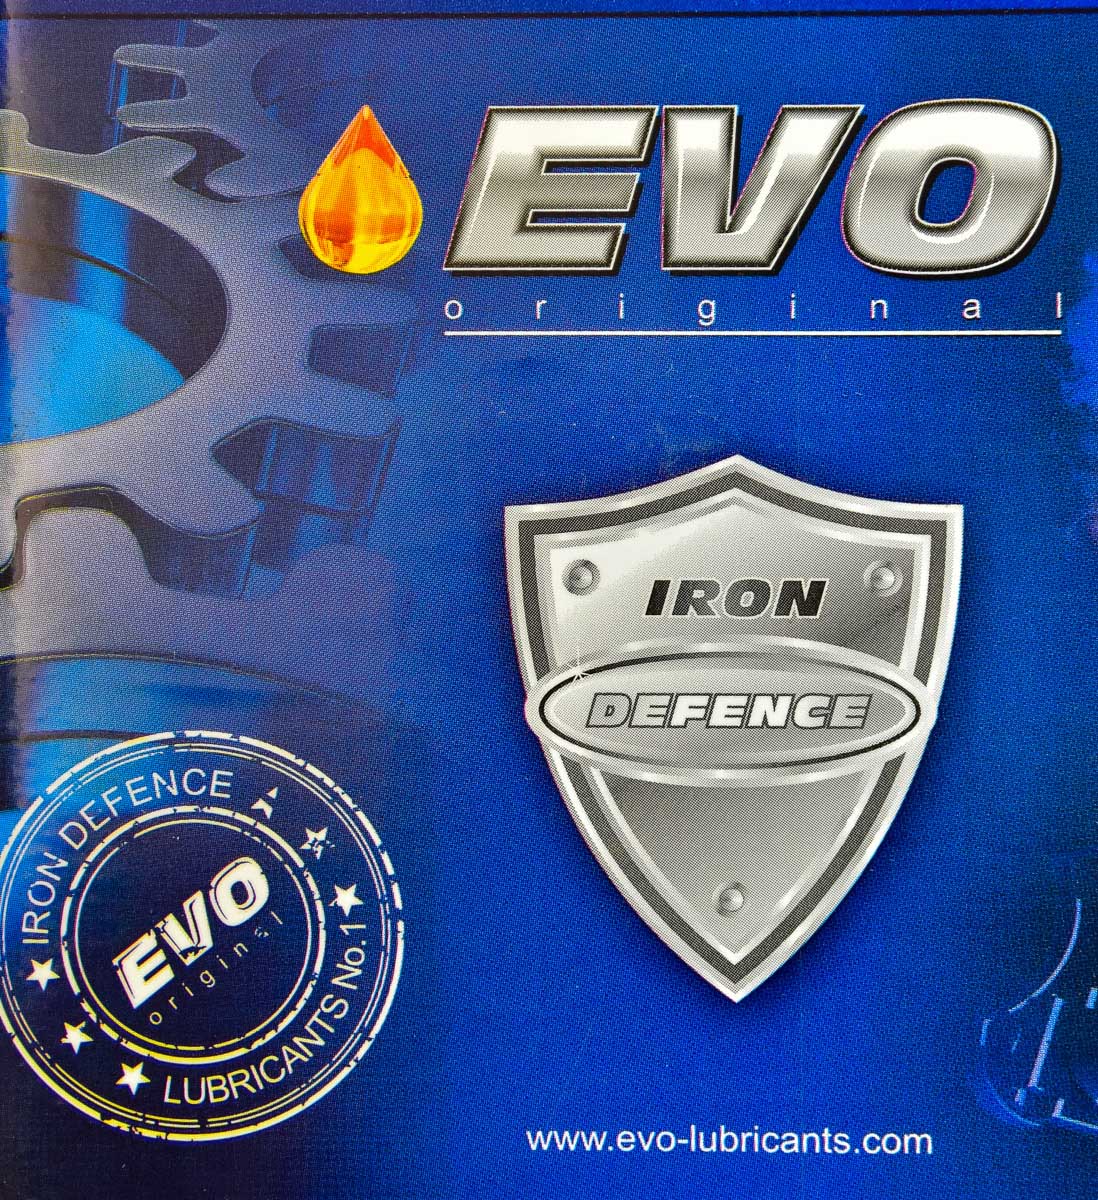 Моторна олива EVO E5 10W-40 10 л на Hyundai Stellar